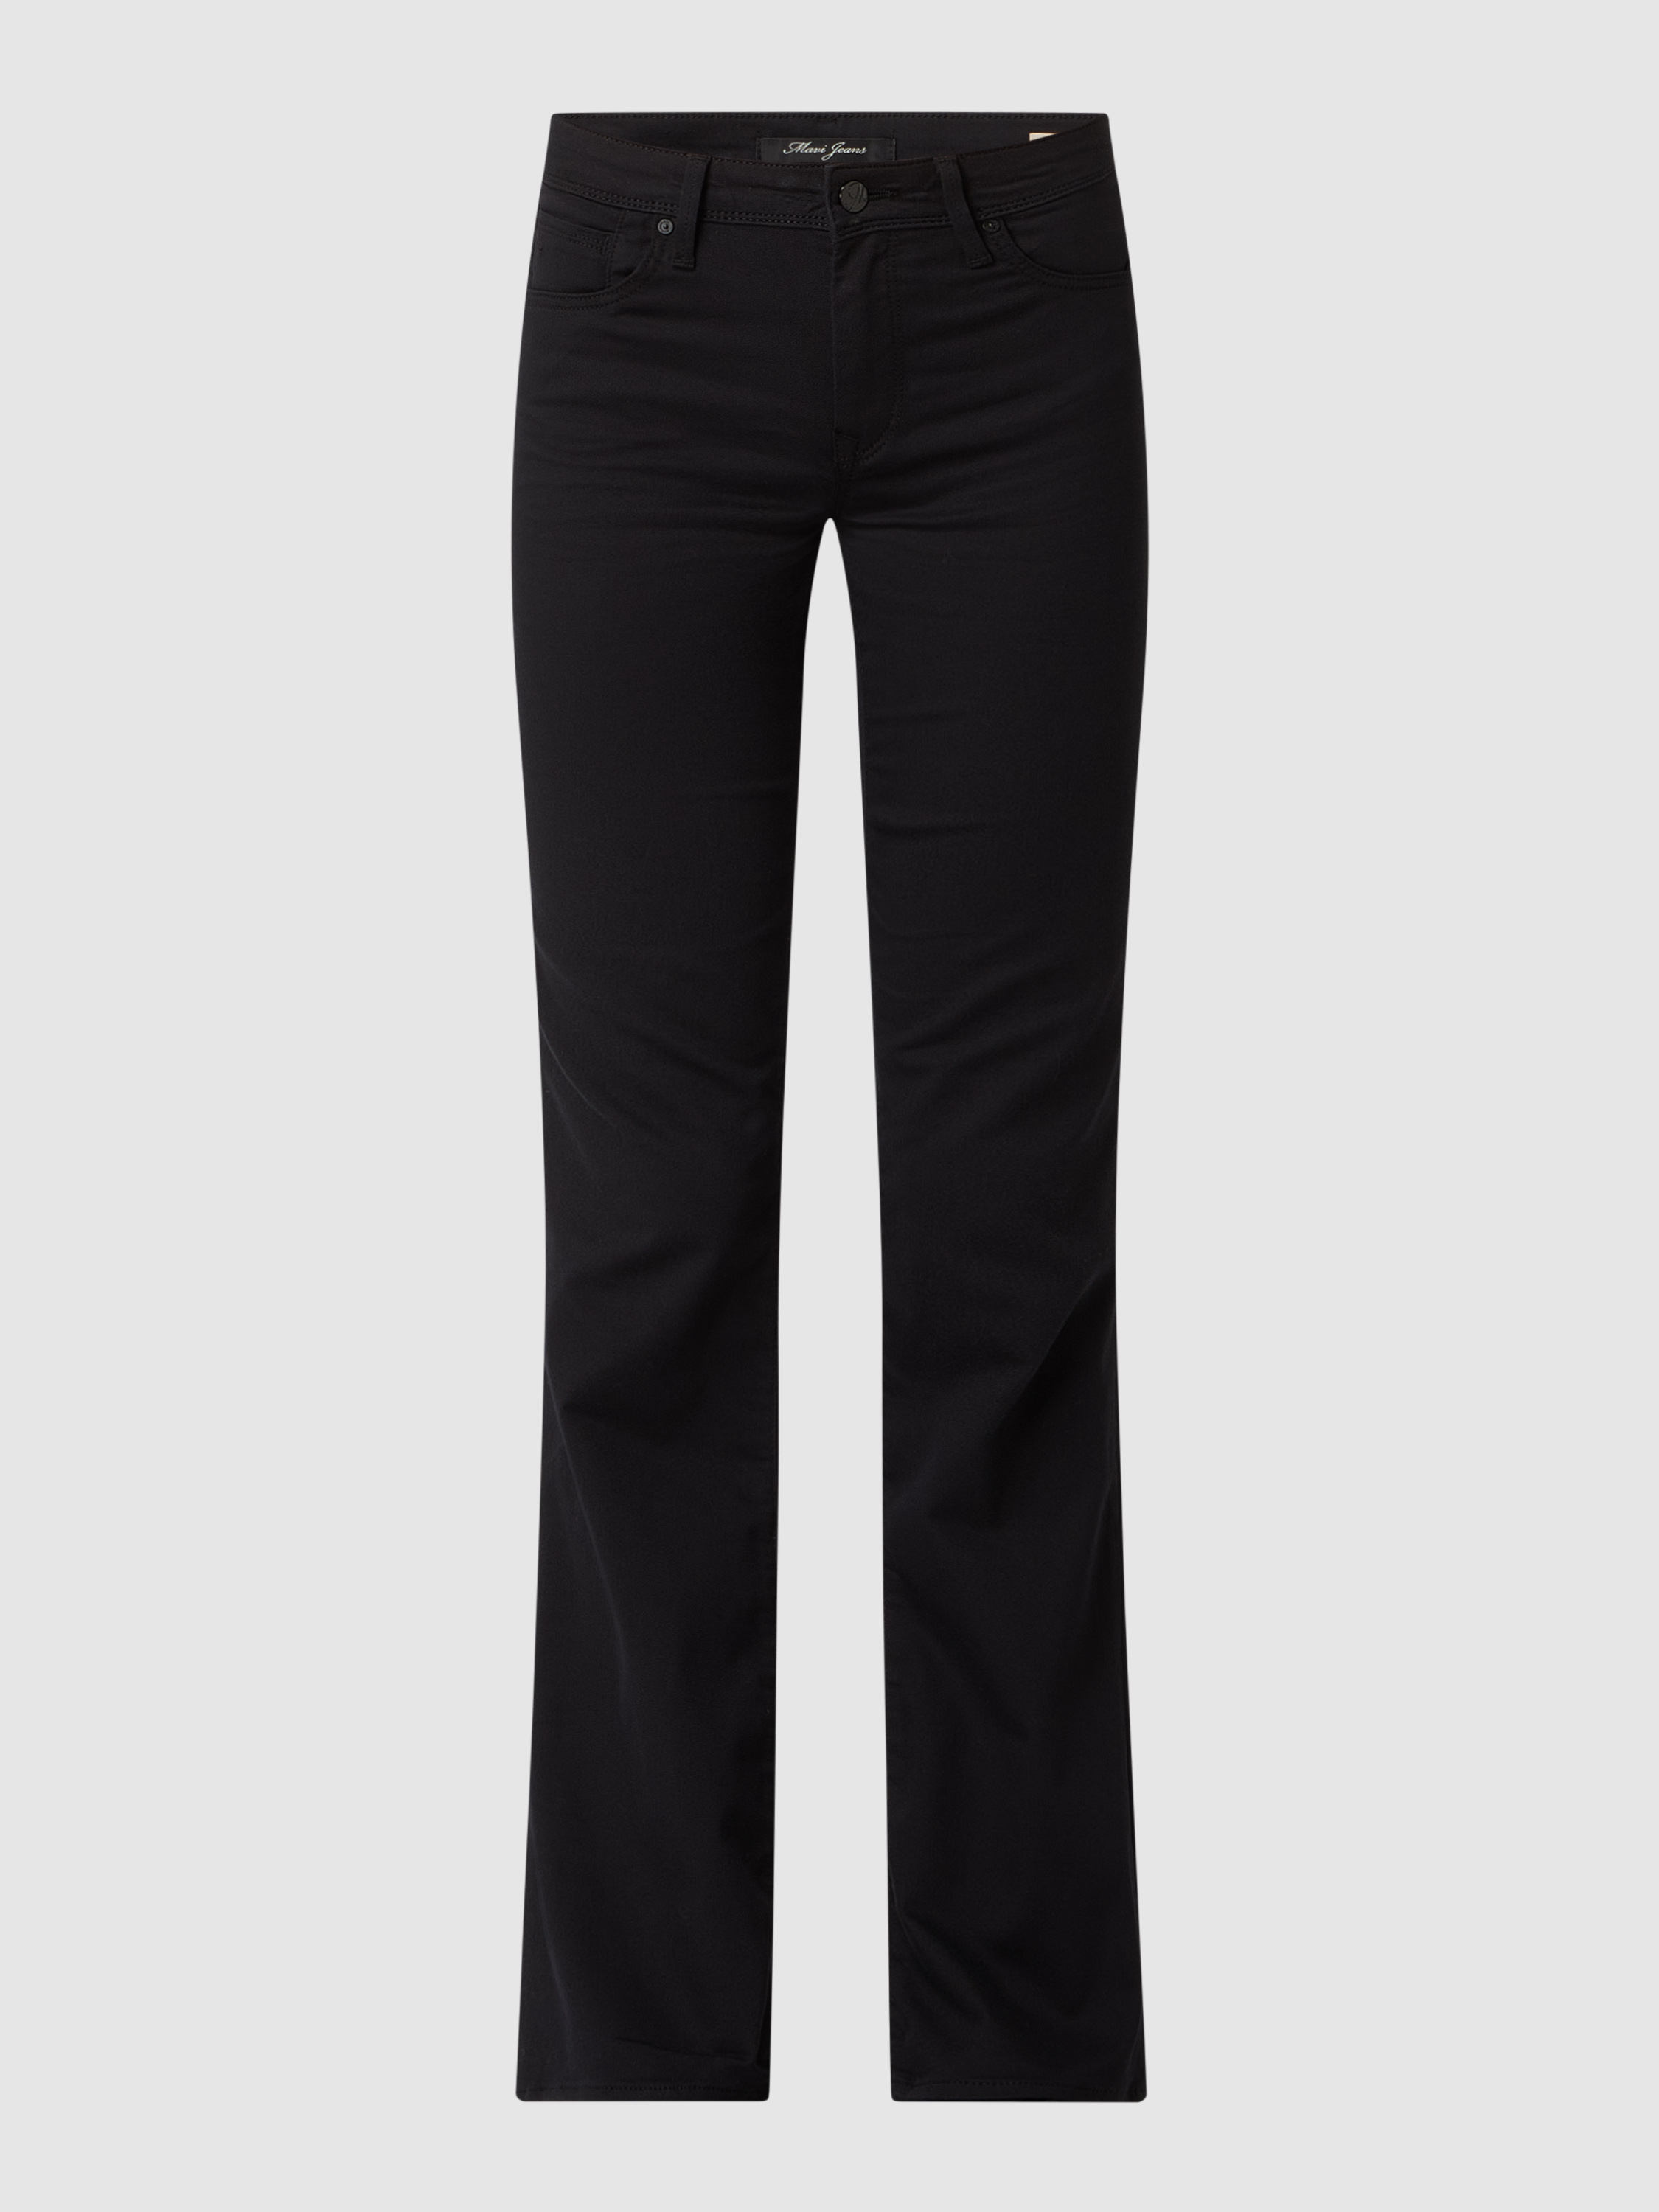 Джинсы женские mavi jeans 1455296 черные 25/32 (доставка из-за рубежа)